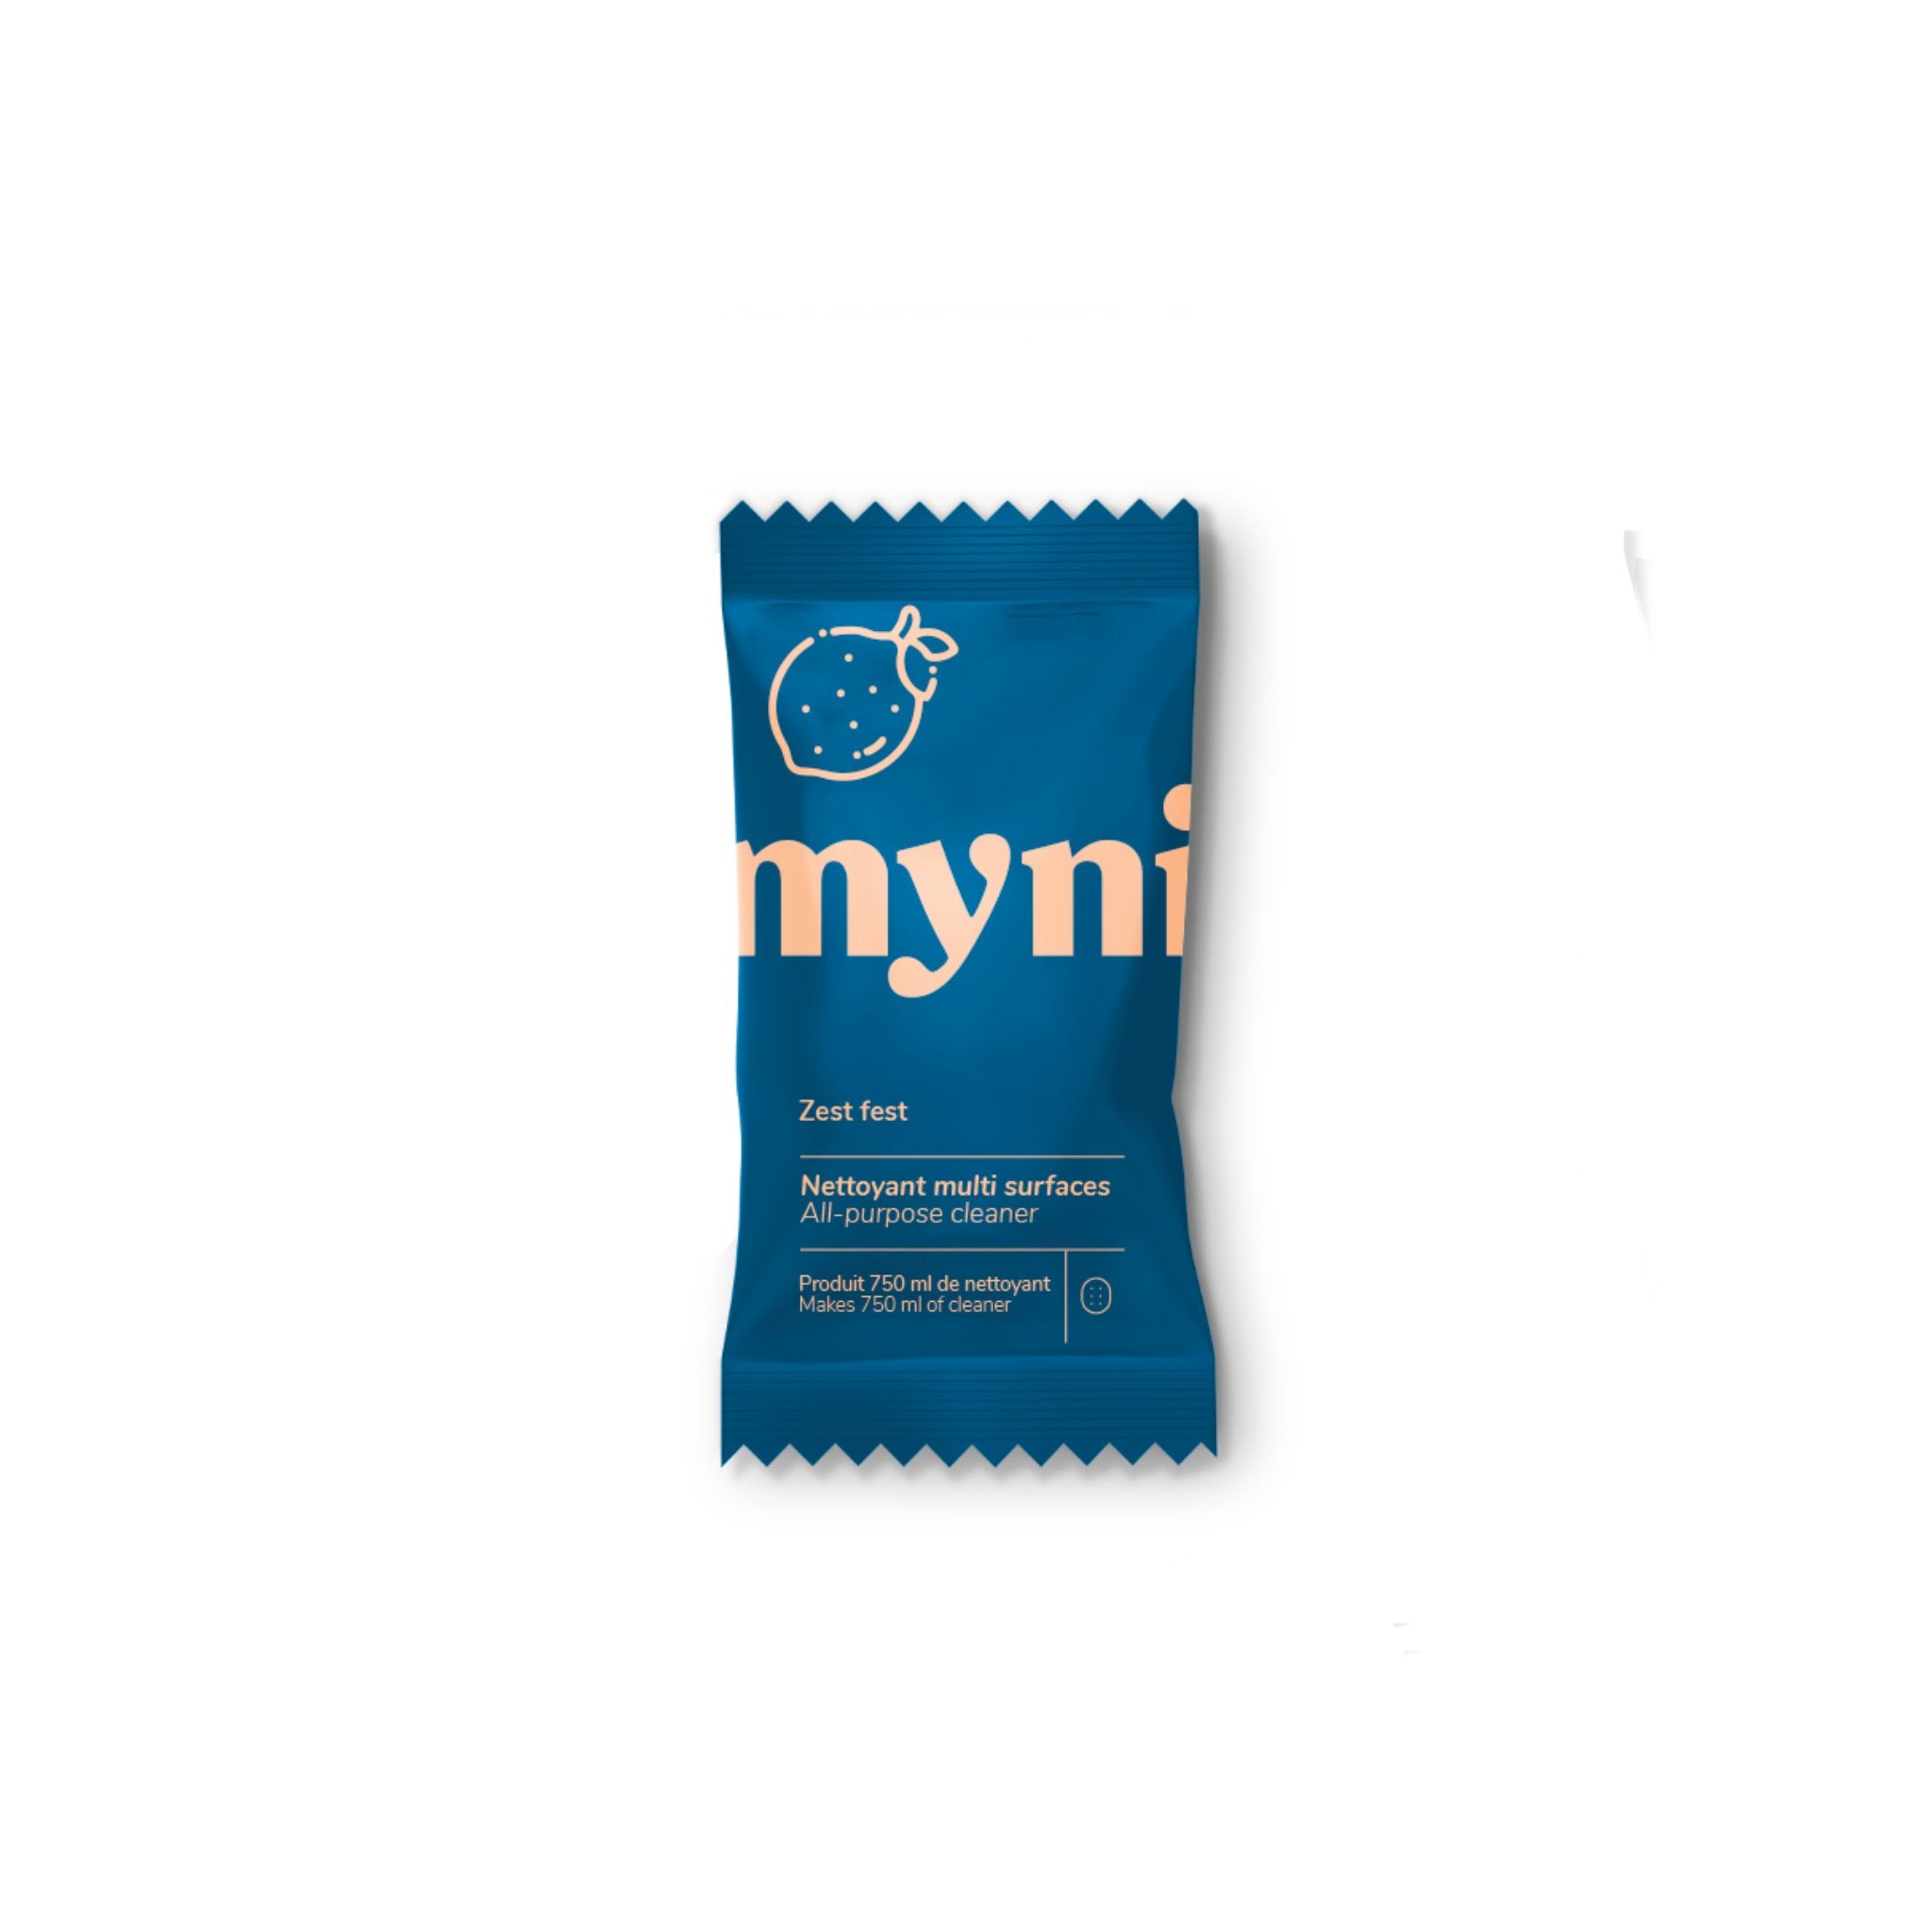 Myni. Recharge Nettoyant Multi-Surfaces - Zest Fest - Concept C. Shop